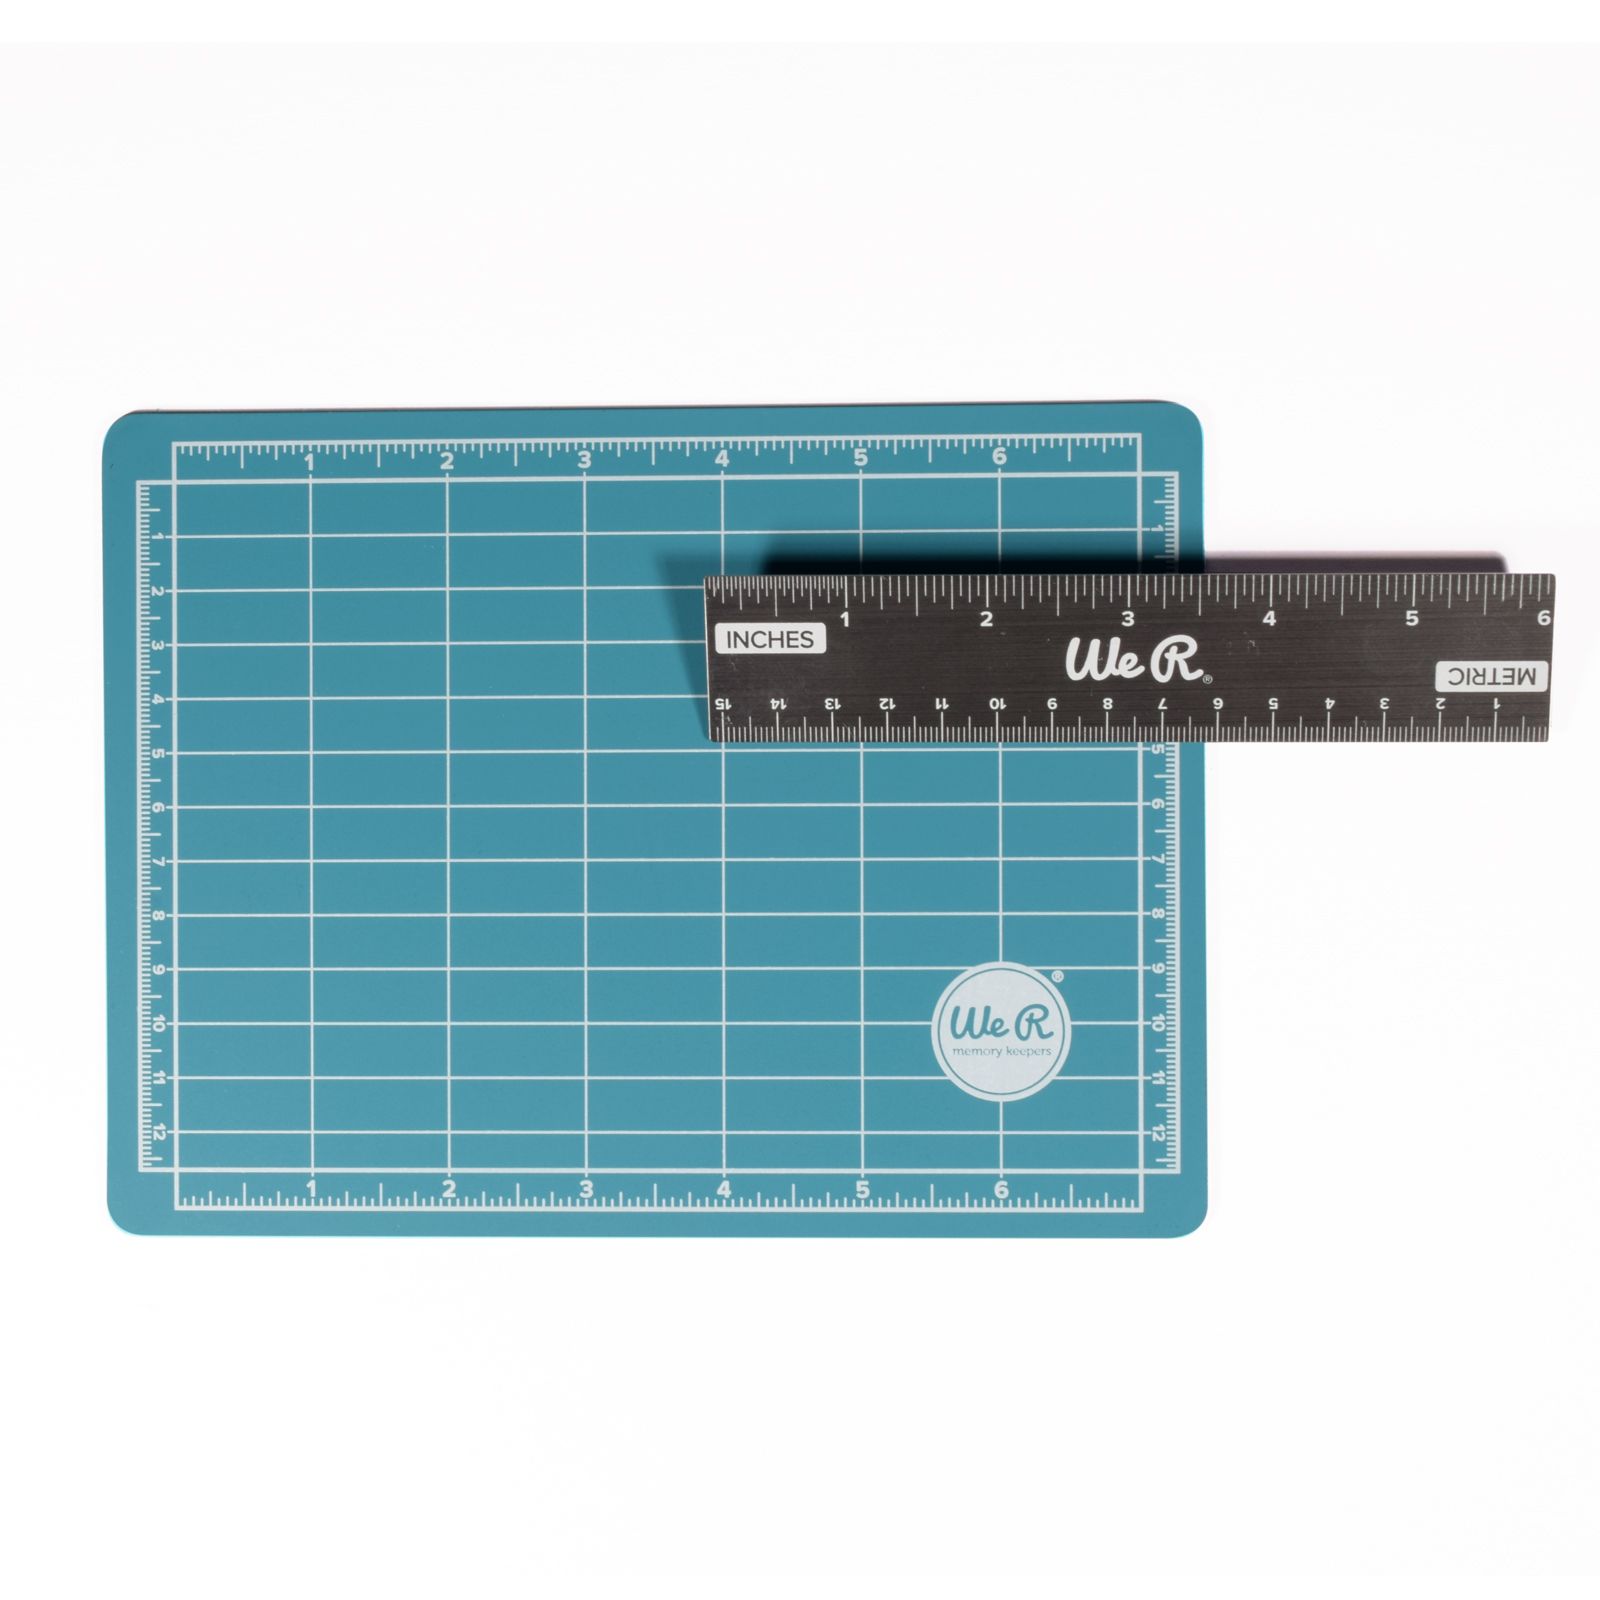 We R Makers • Mini Magnetic Mat & Ruler